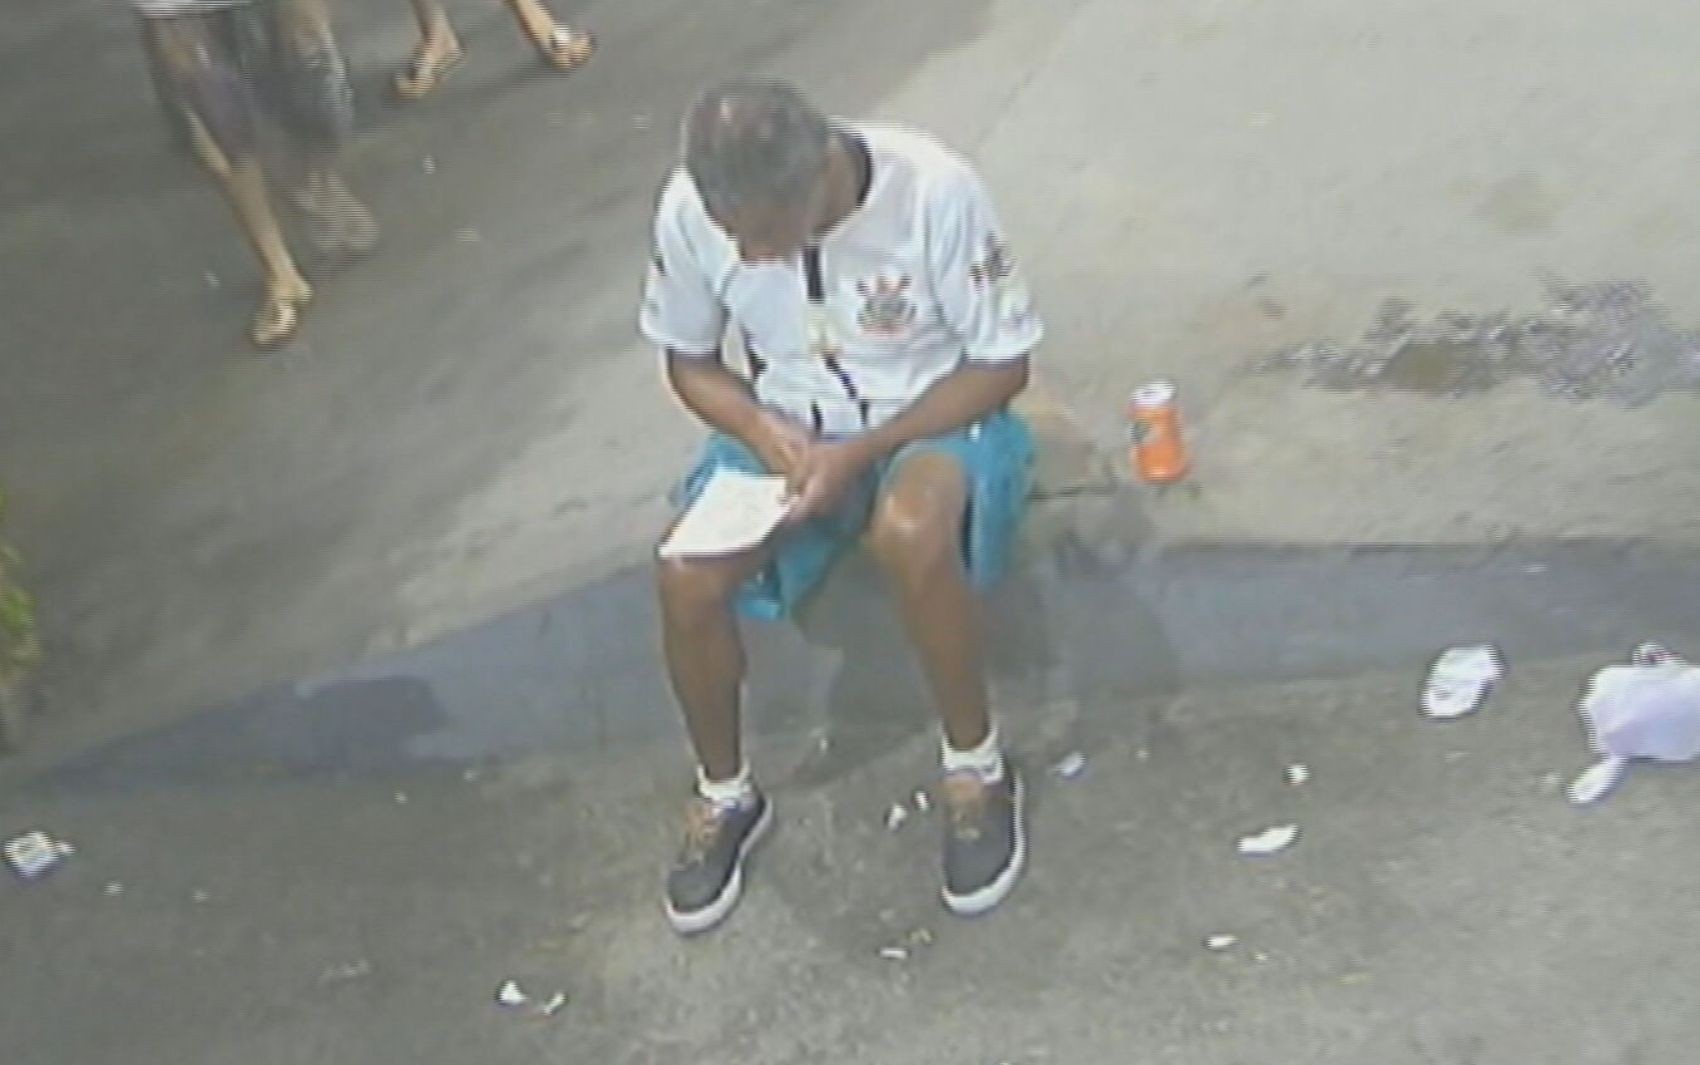 VÍDEO: Homem morre após levar tiro por engano enquanto lia papel sentado em calçada, diz polícia